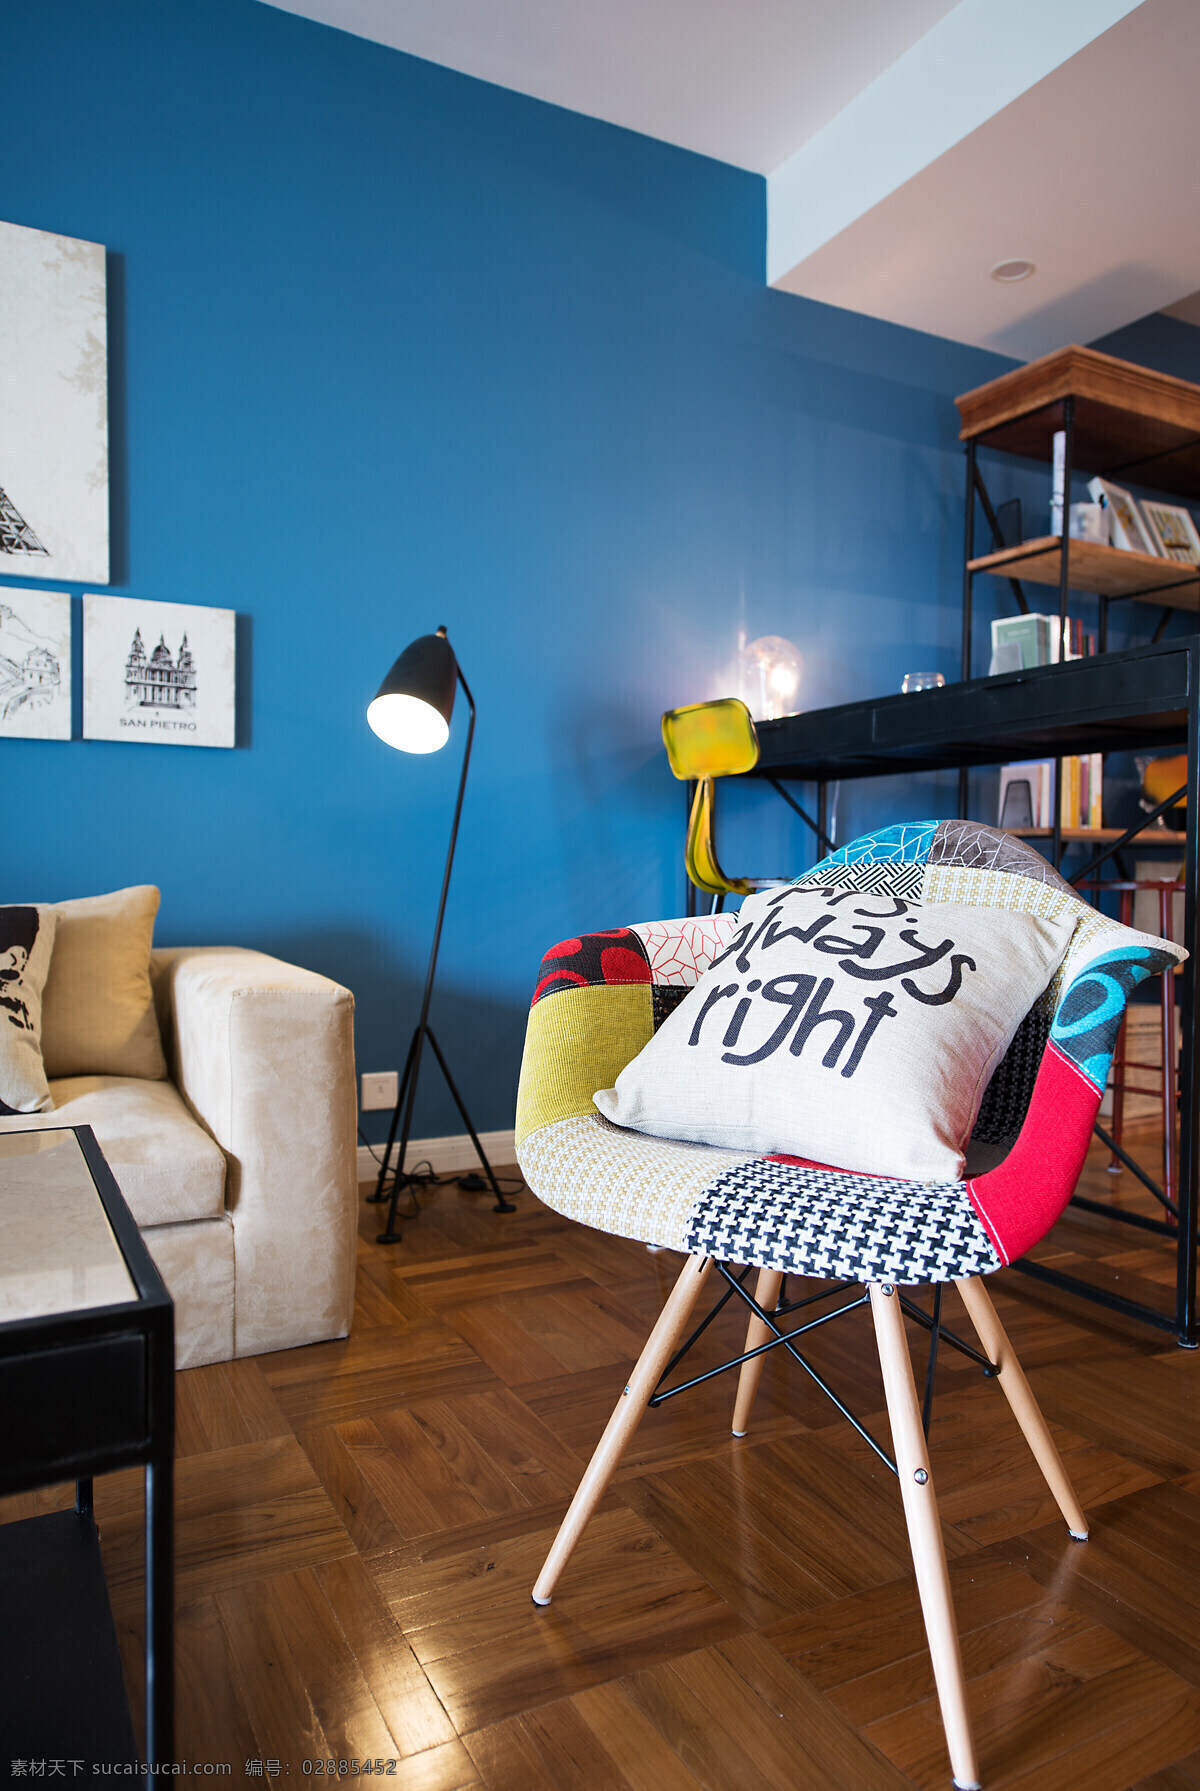 田园 蓝色 调 客厅 室内装修 效果图 木地板 客厅装修 蓝色背景墙 单人沙发椅